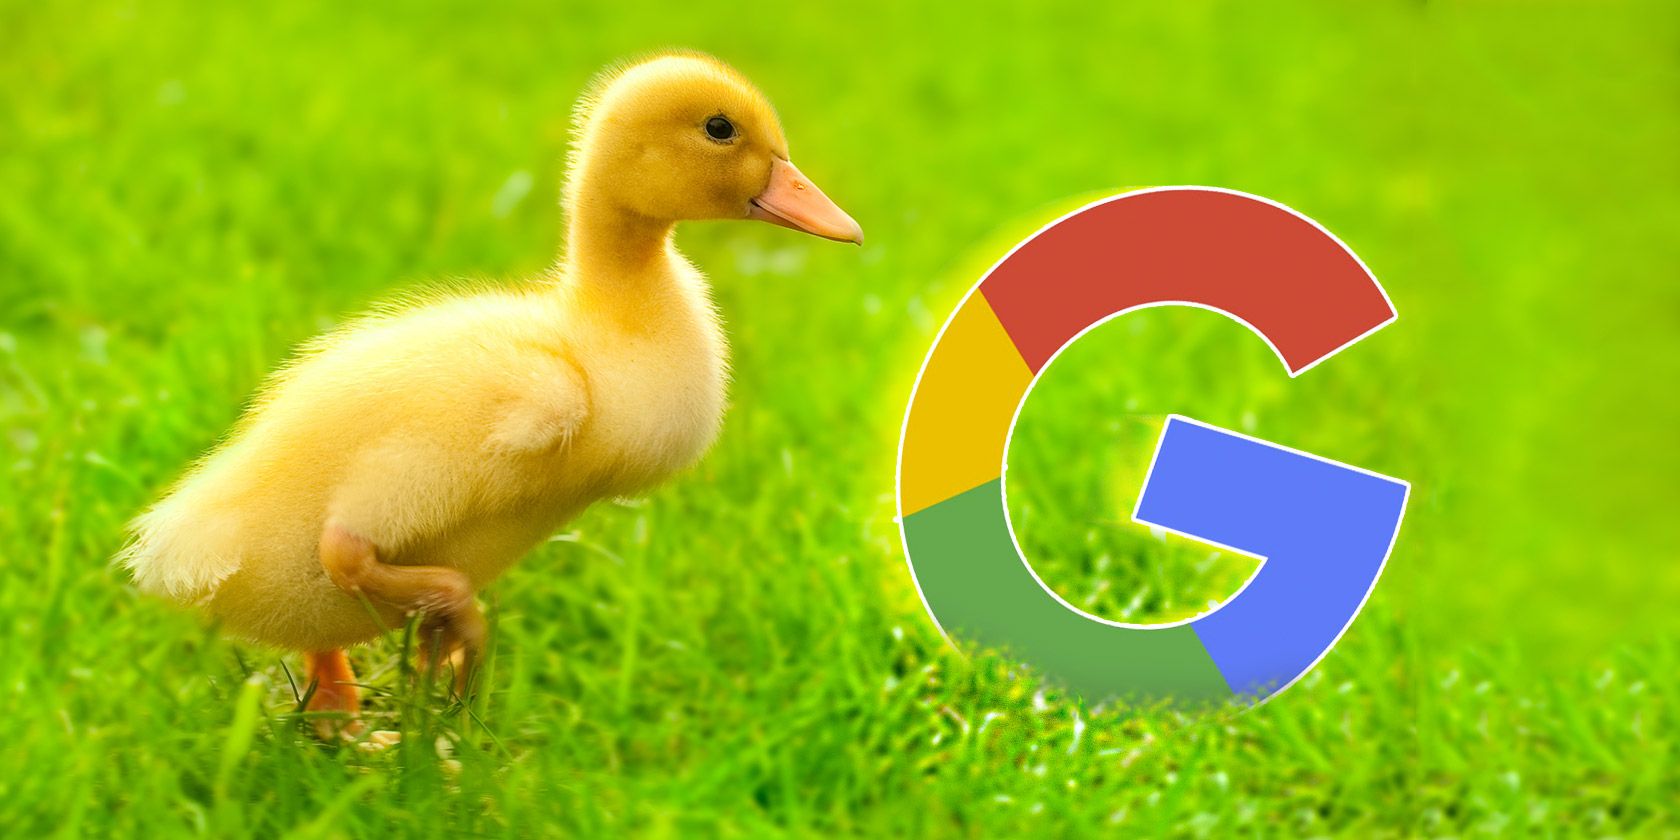 duckduckgo-google